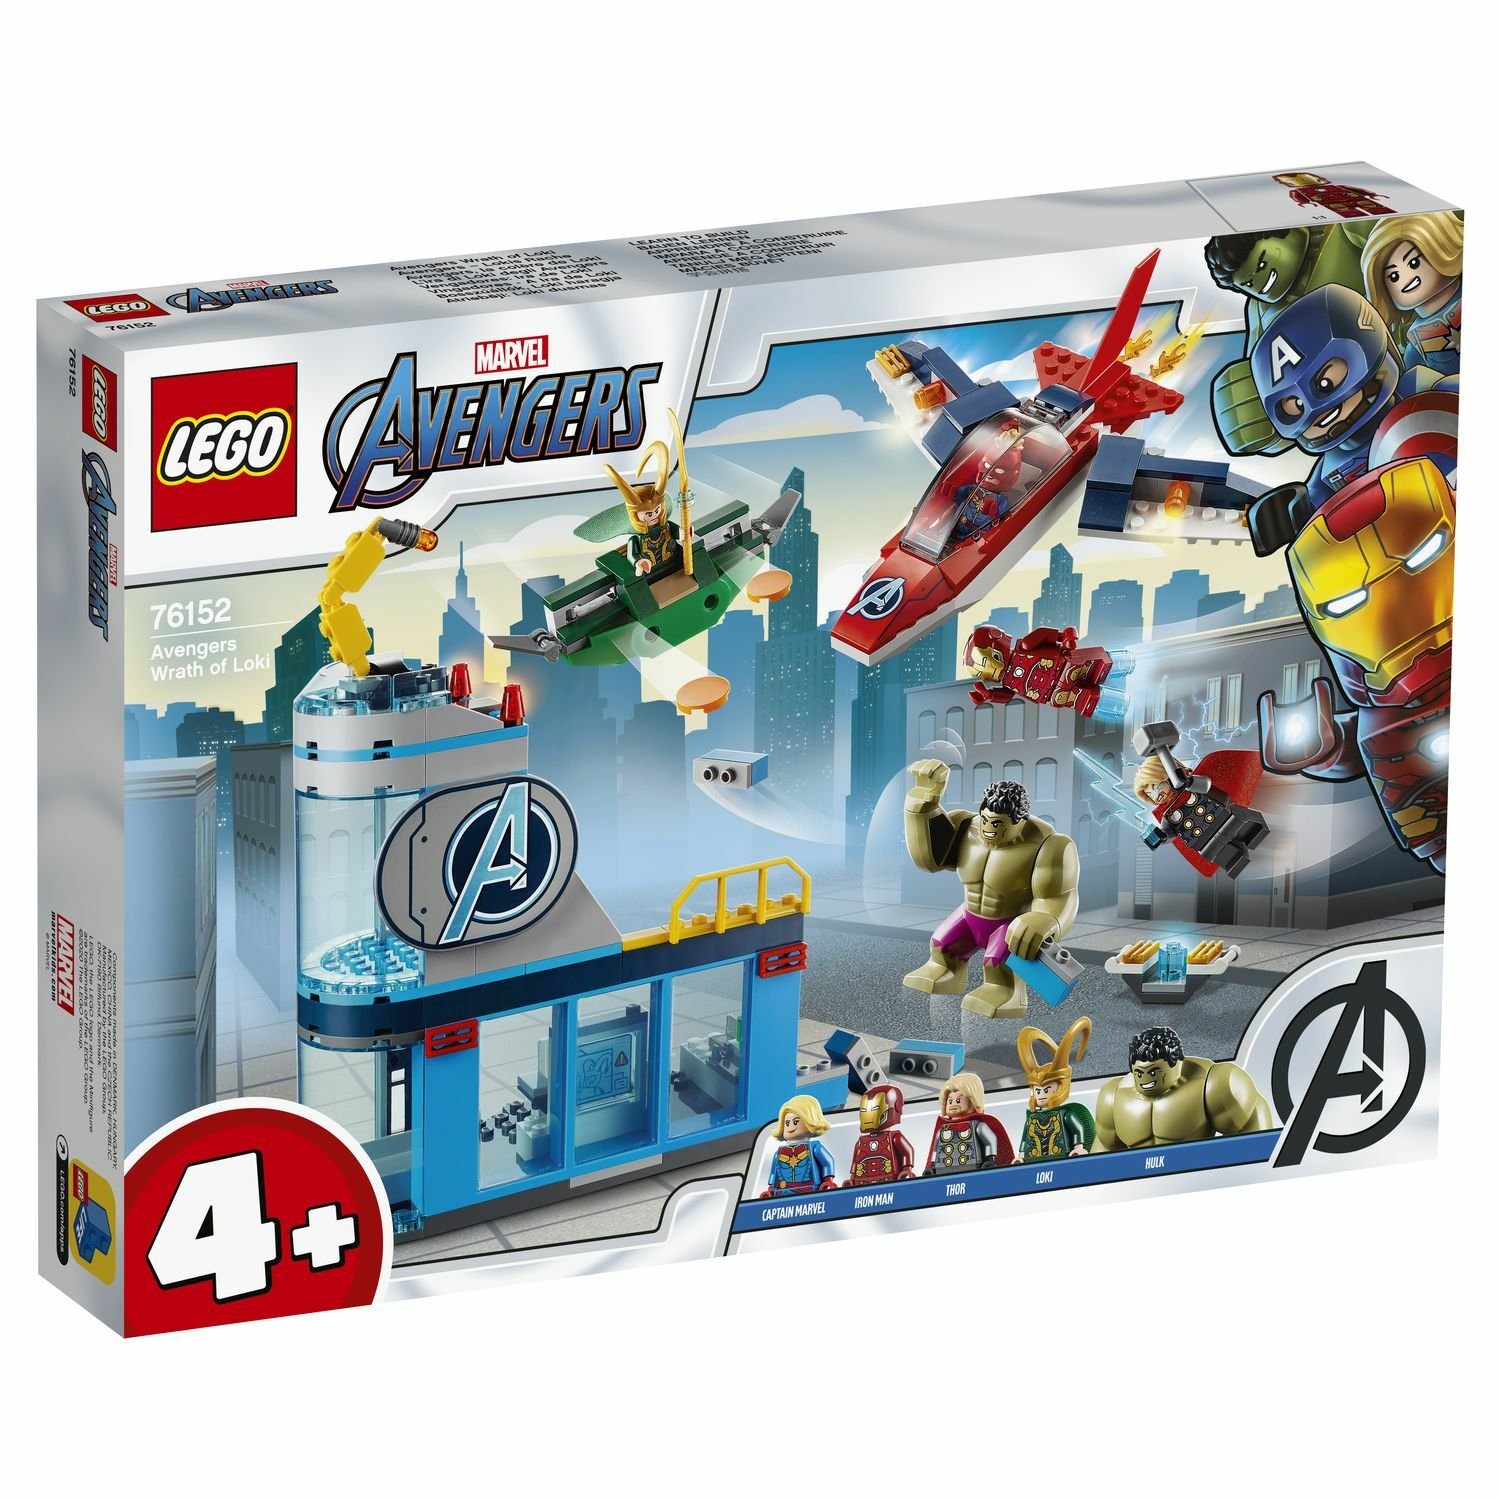 Lego Super Heroes 76152 Мстители: гнев Локи